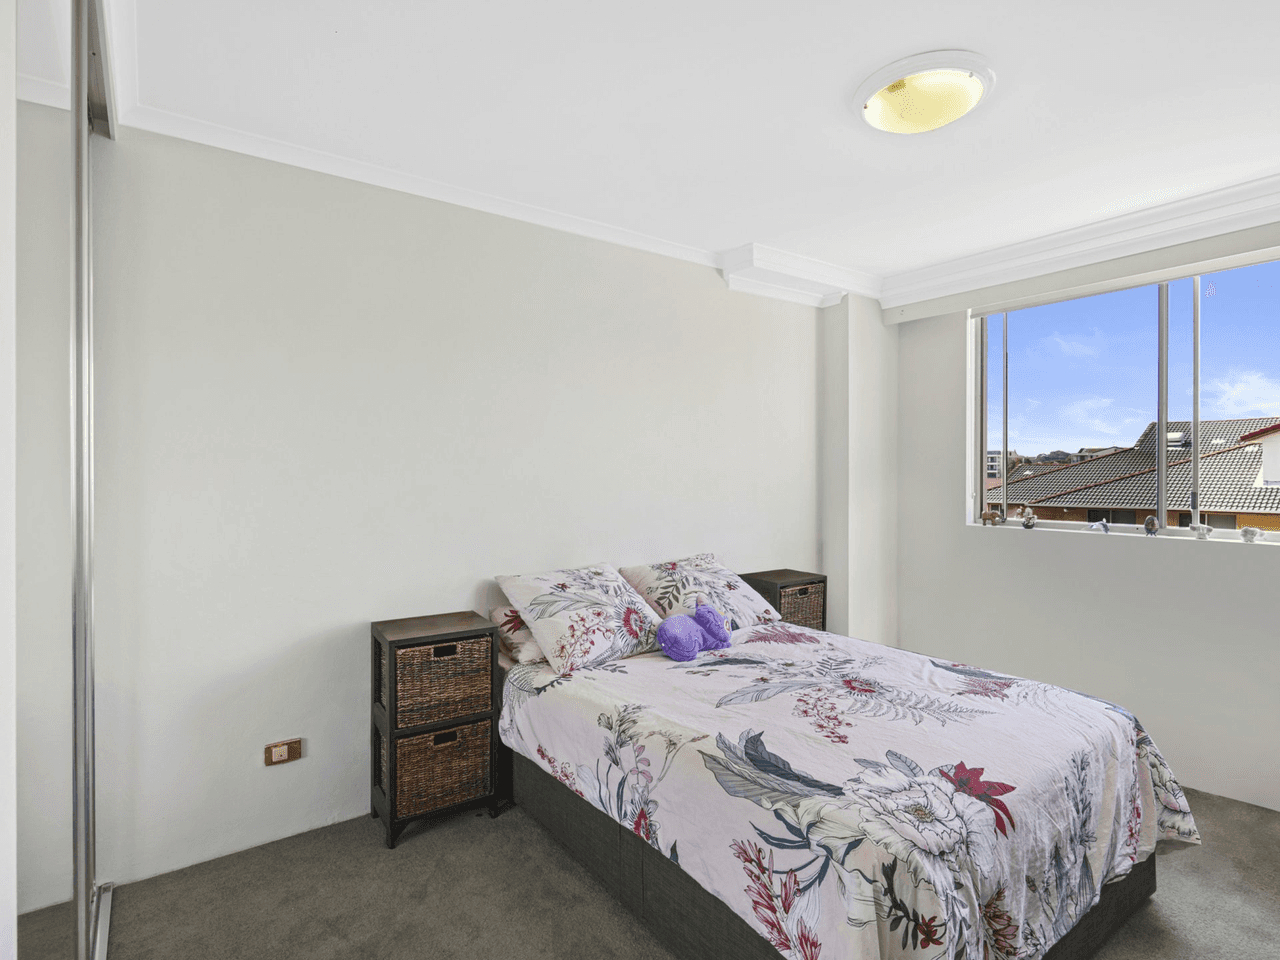 Apartment 777/83-93 Dalmeny Avenue, ROSEBERY, NSW 2018